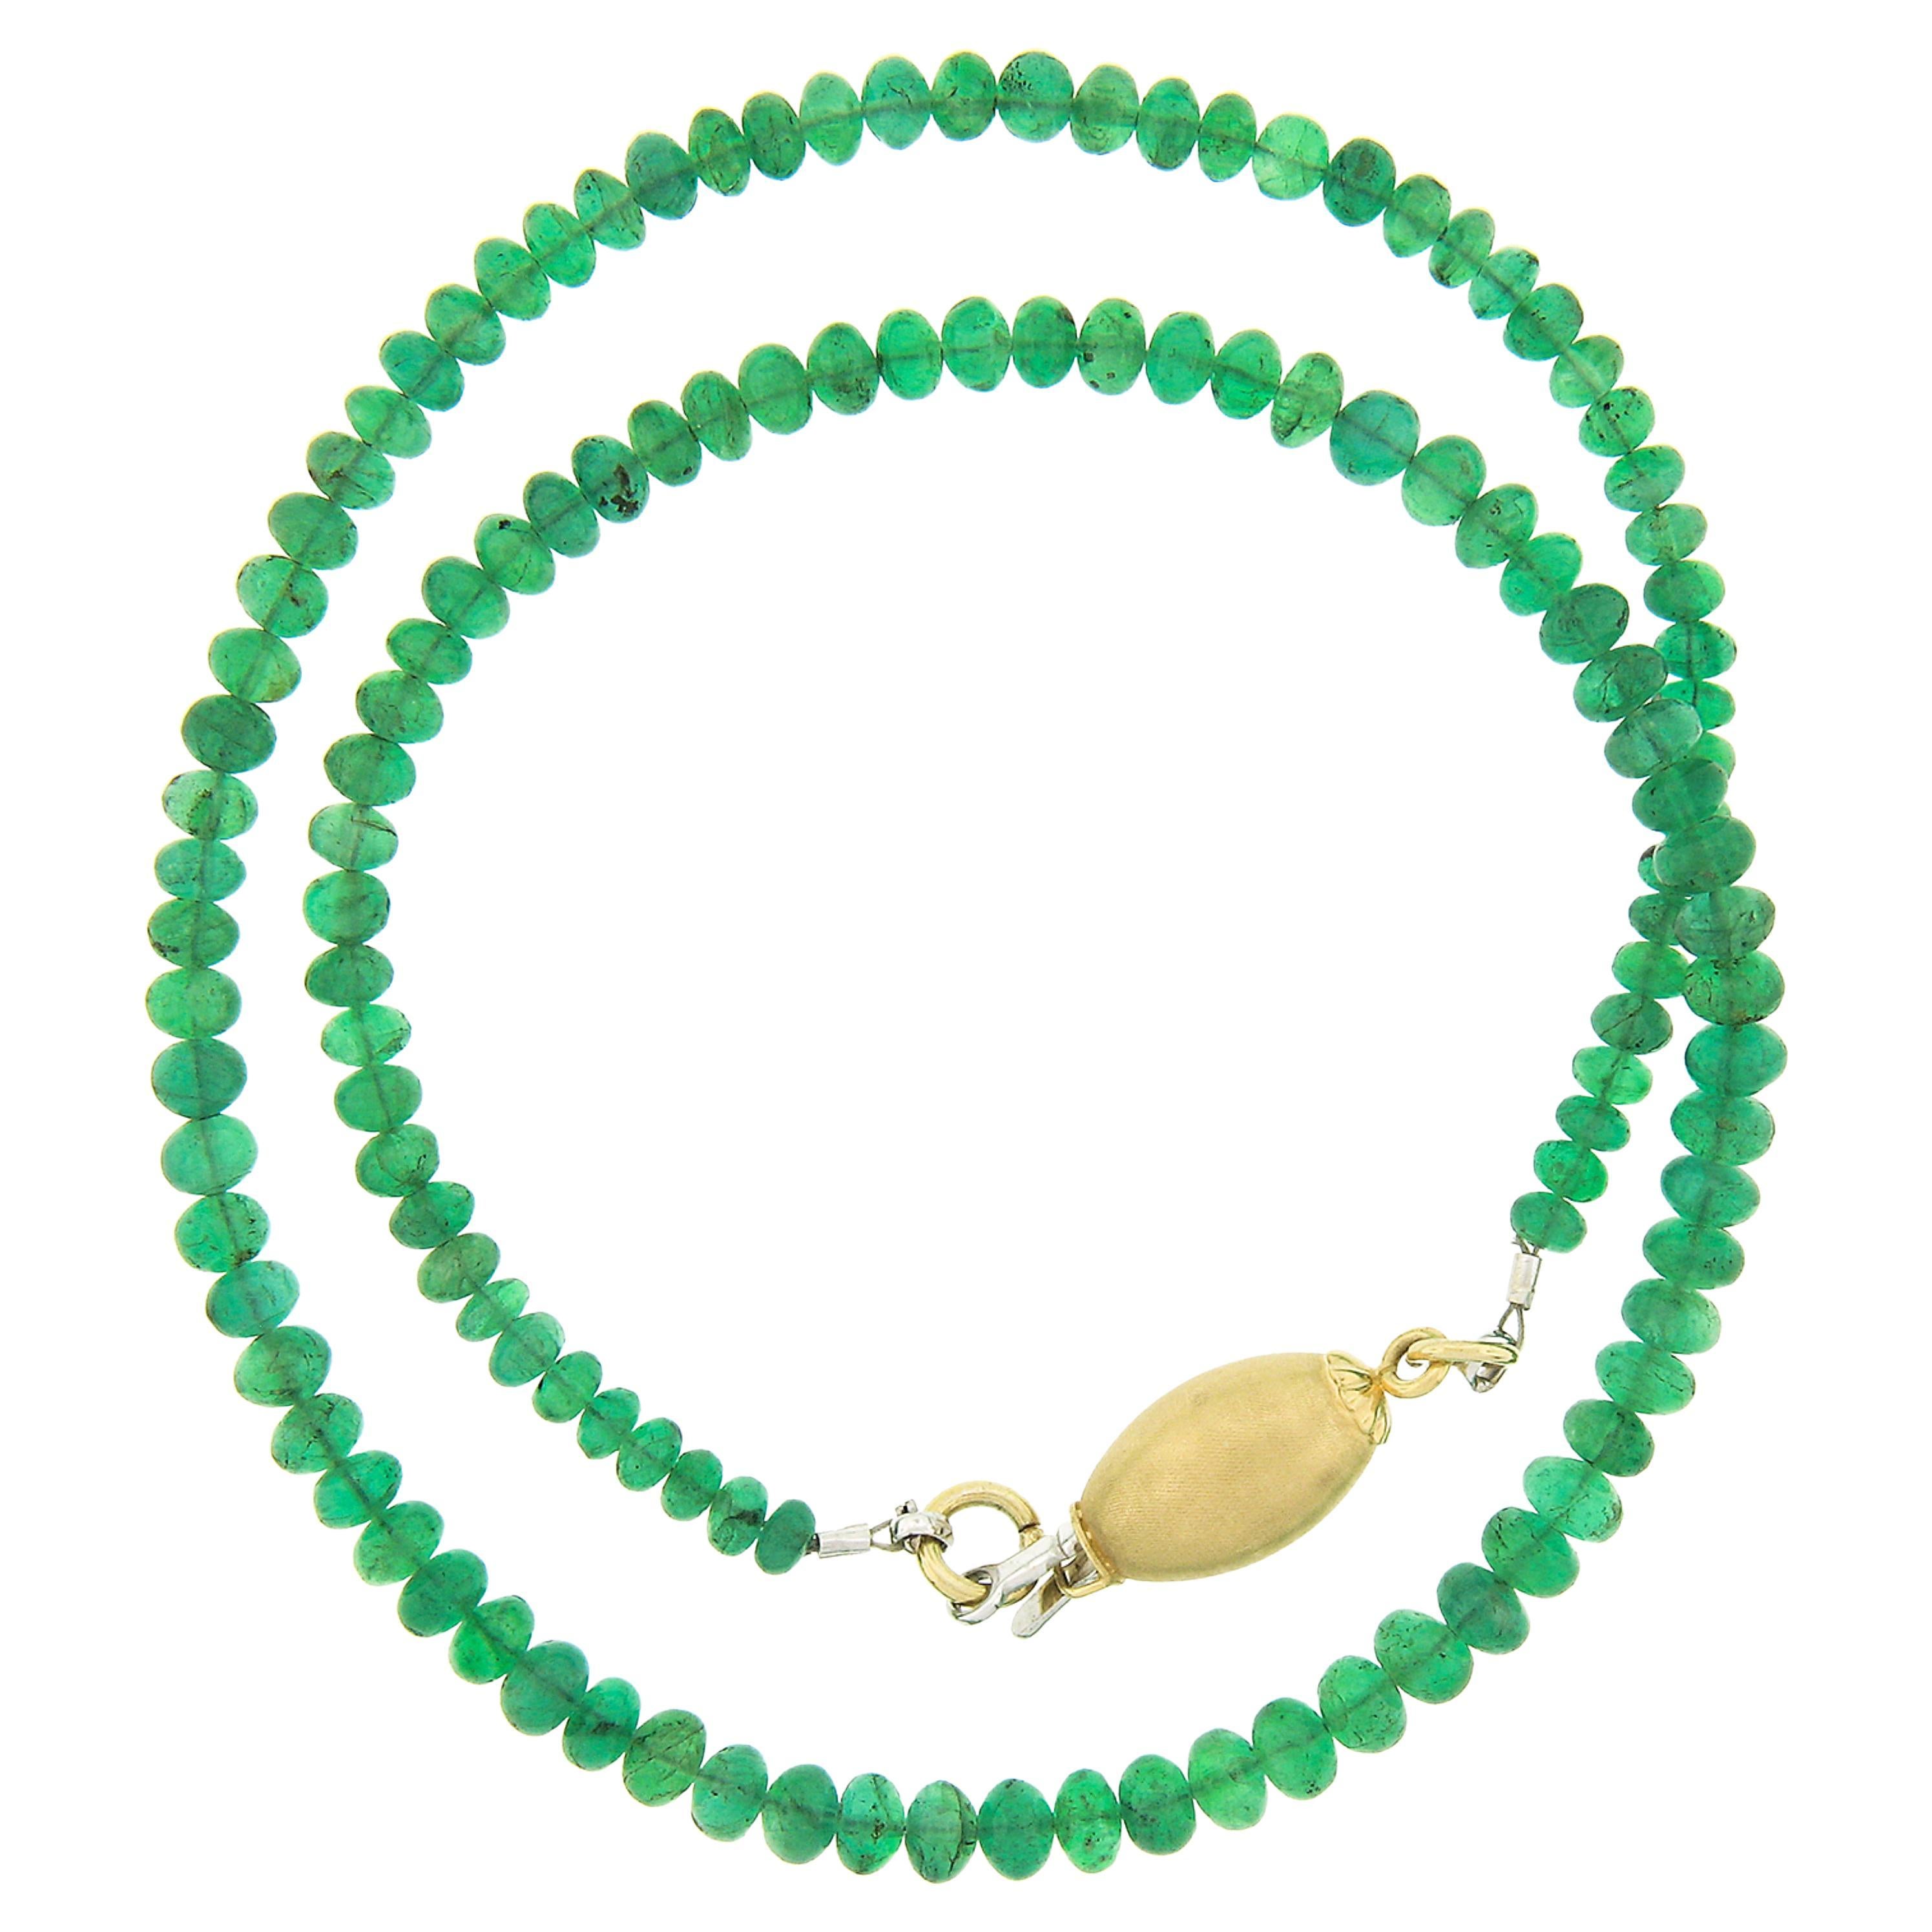 Vieille perle Rondelle Emeraude verte GIA riche Collier avec fermoir en or 14k